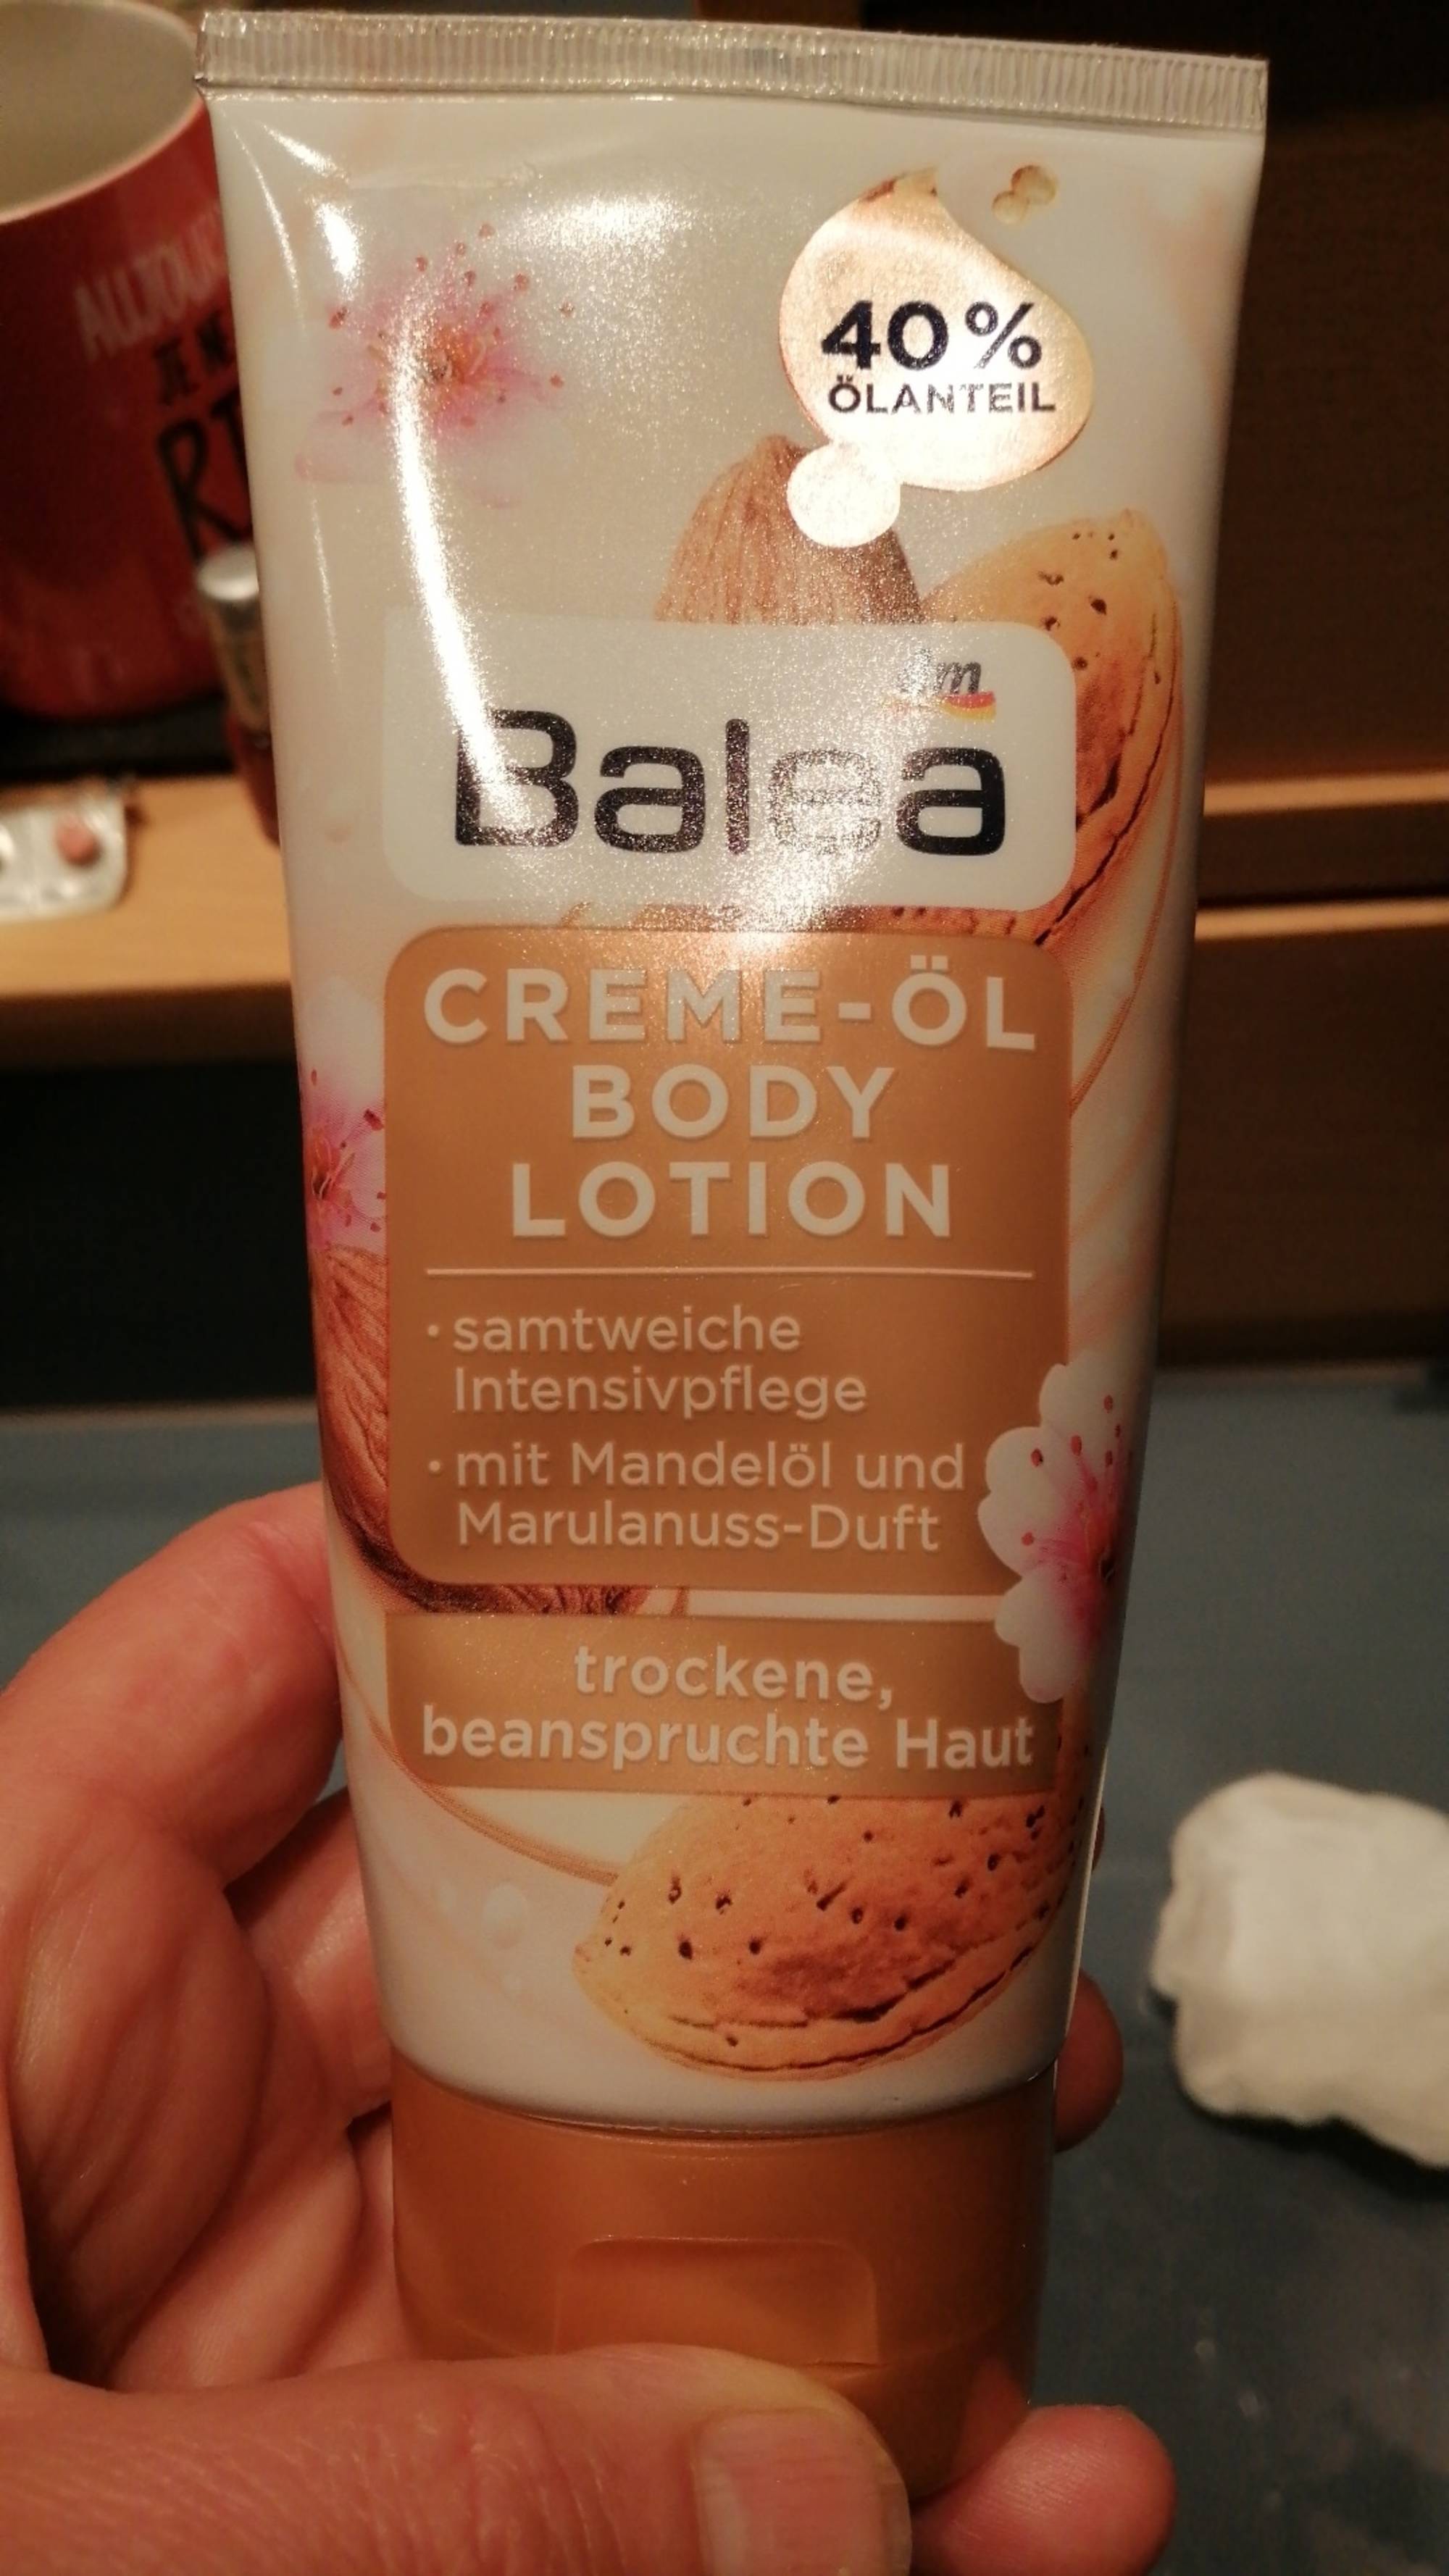 BALEA - Creme-öl body lotion 